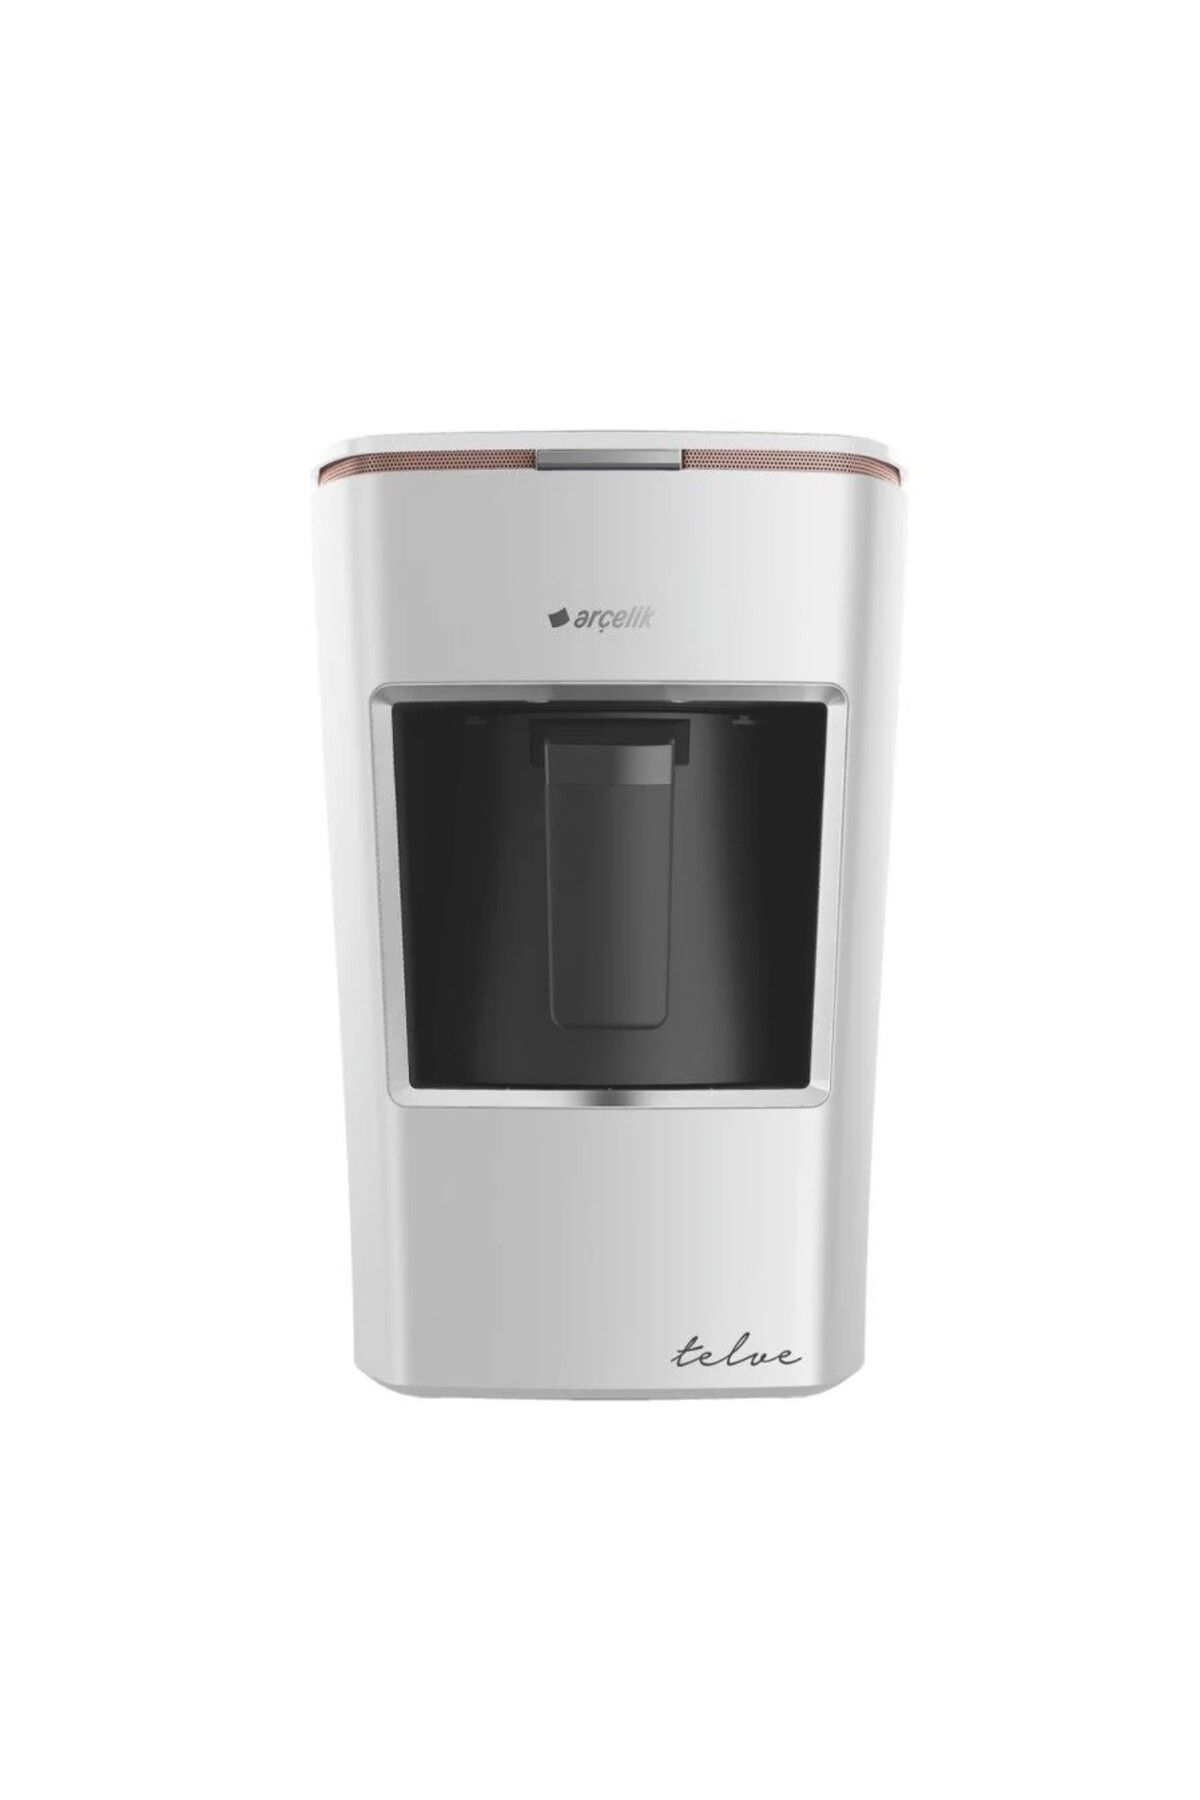 Arçelik K 3300 B Kahve Makinesi - Mini Telve - Resital Serisi - Beyaz